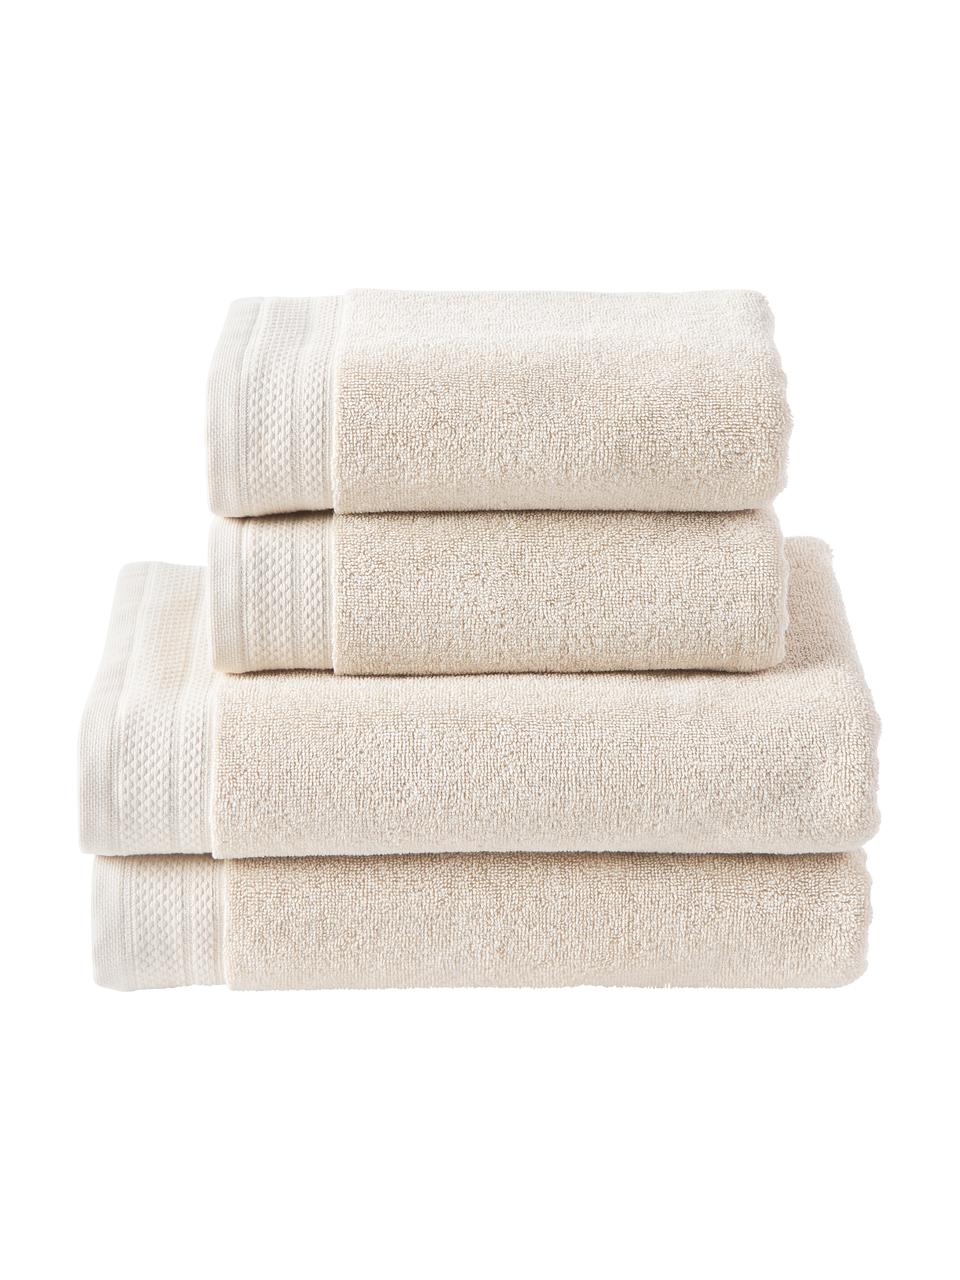 Lot de serviettes de bain en coton bio Premium, 4 élém., 100 % coton bio, certifié GOTS
Qualité supérieure 600 g/m²

Le matériau est certifié STANDARD 100 OEKO-TEX®, IS025 189577, OETI, Beige clair, Lot de différentes tailles